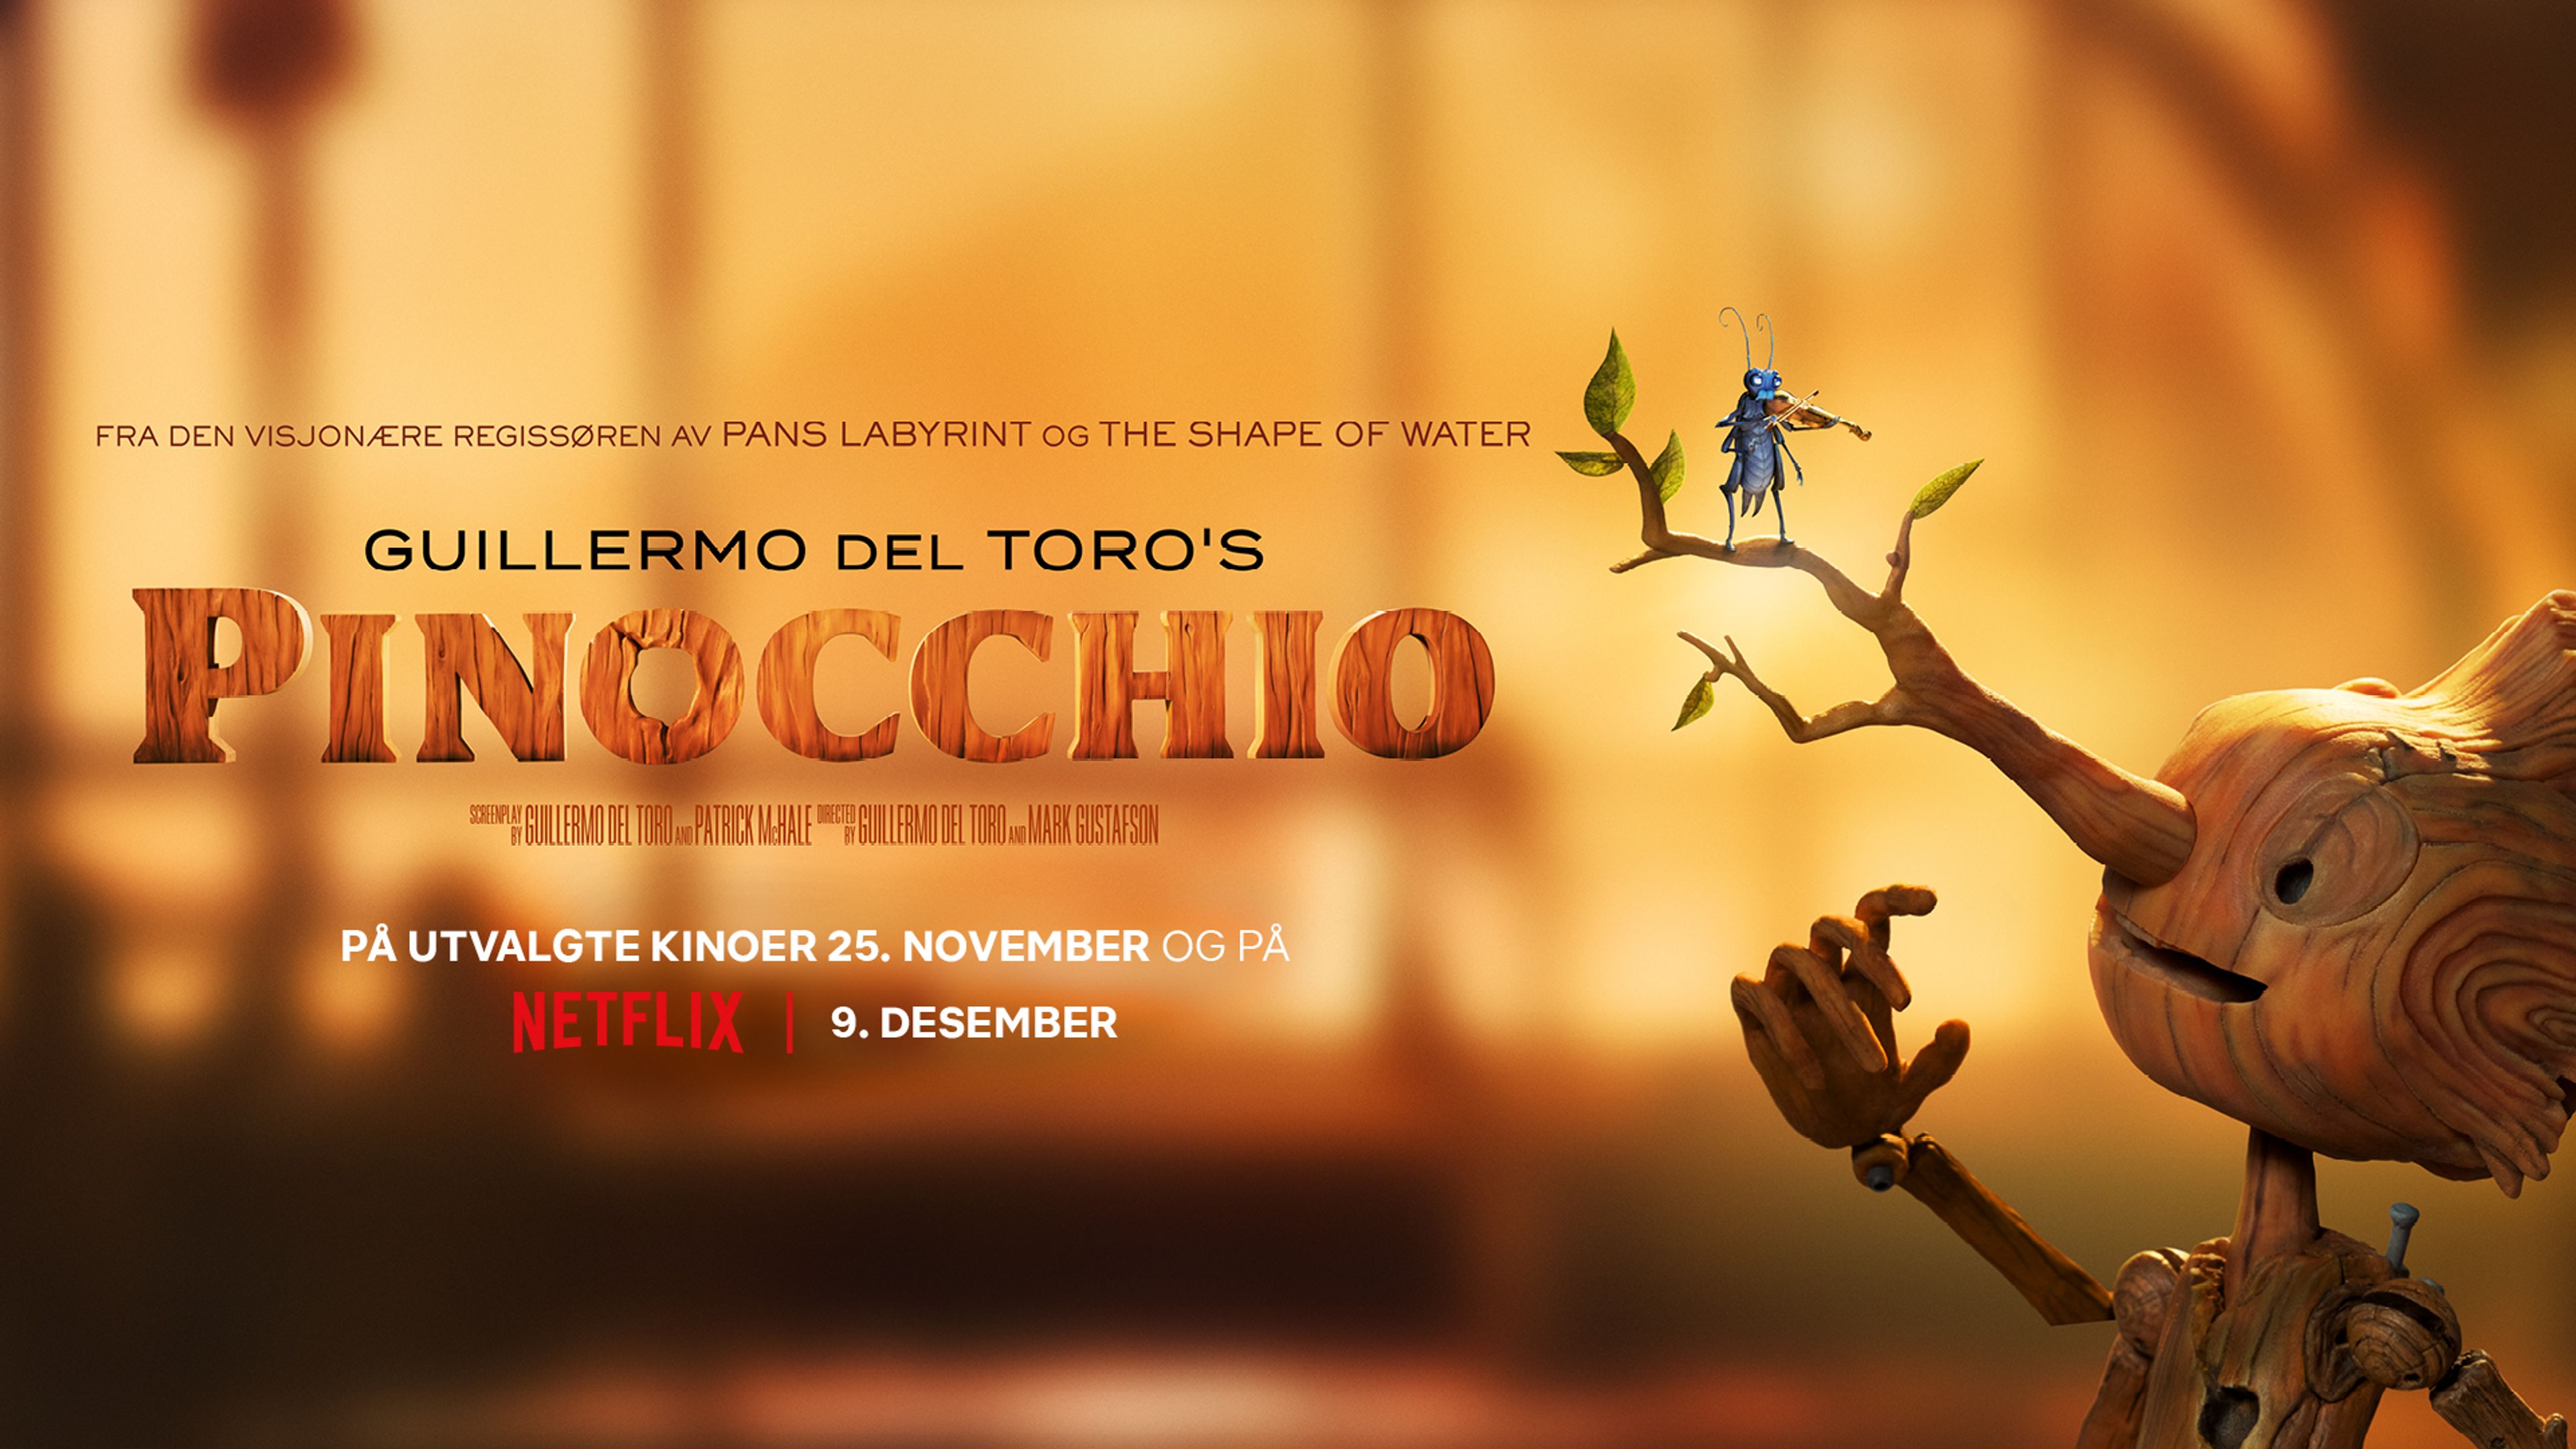 Guillermo del Toro’s PINOCCHIO